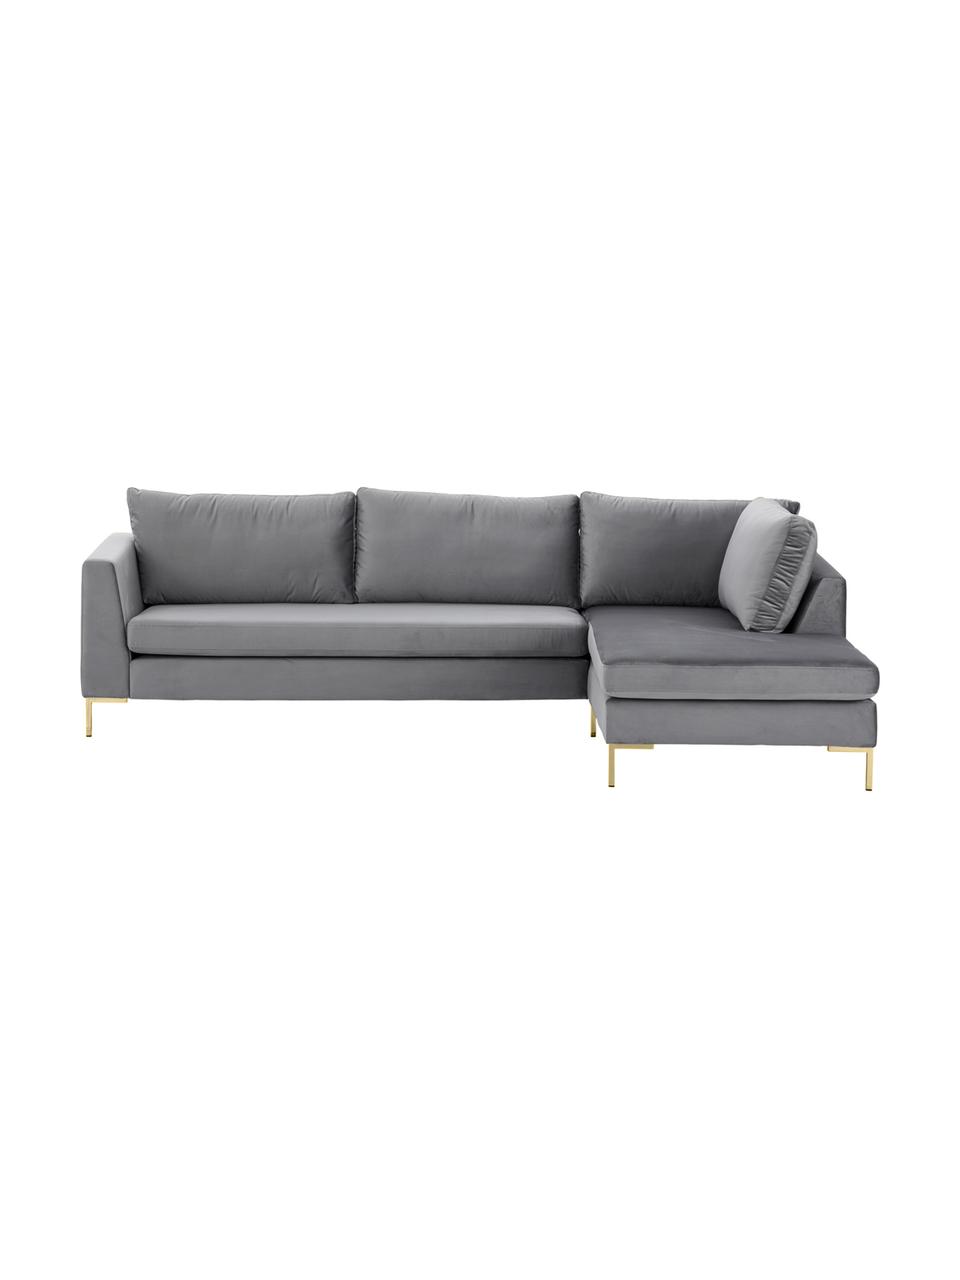 Sofa narożna z aksamitu z metalowymi nogami Luna, Tapicerka: aksamit (poliester) Dzięk, Nogi: metal galwanizowany, Ciemnoszary aksamit, złoty, S 280 x G 184 cm, lewostronna